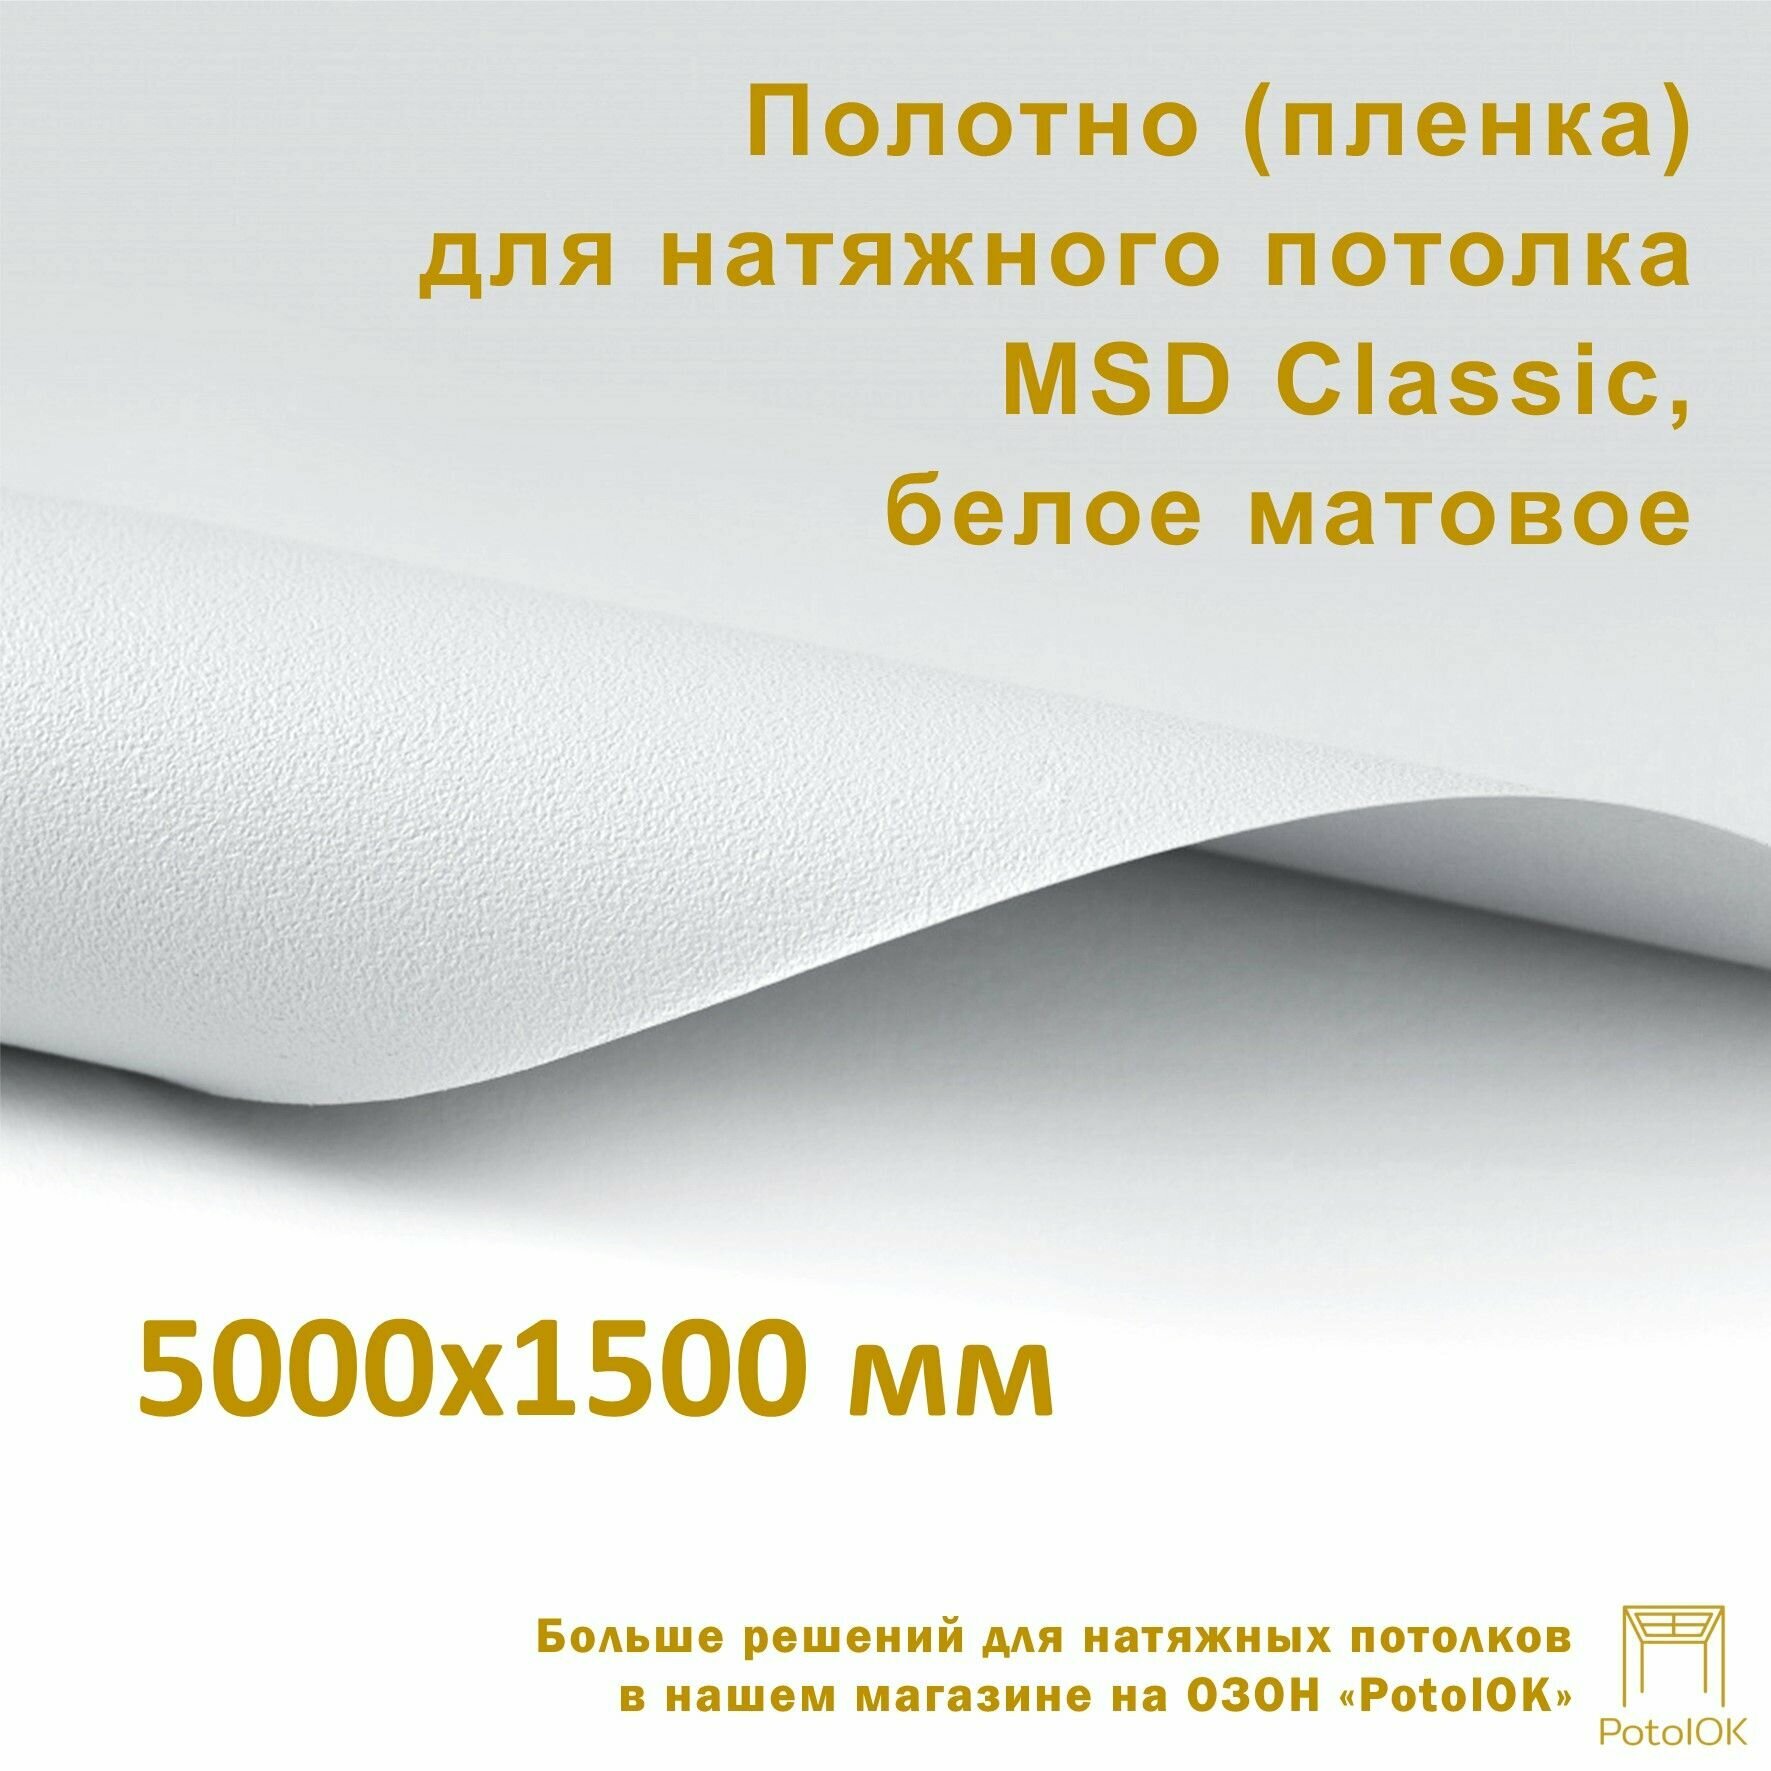 Полотно (пленка) для натяжного потолка MSD CLASSIC, белое матовое, 5000x1500 мм